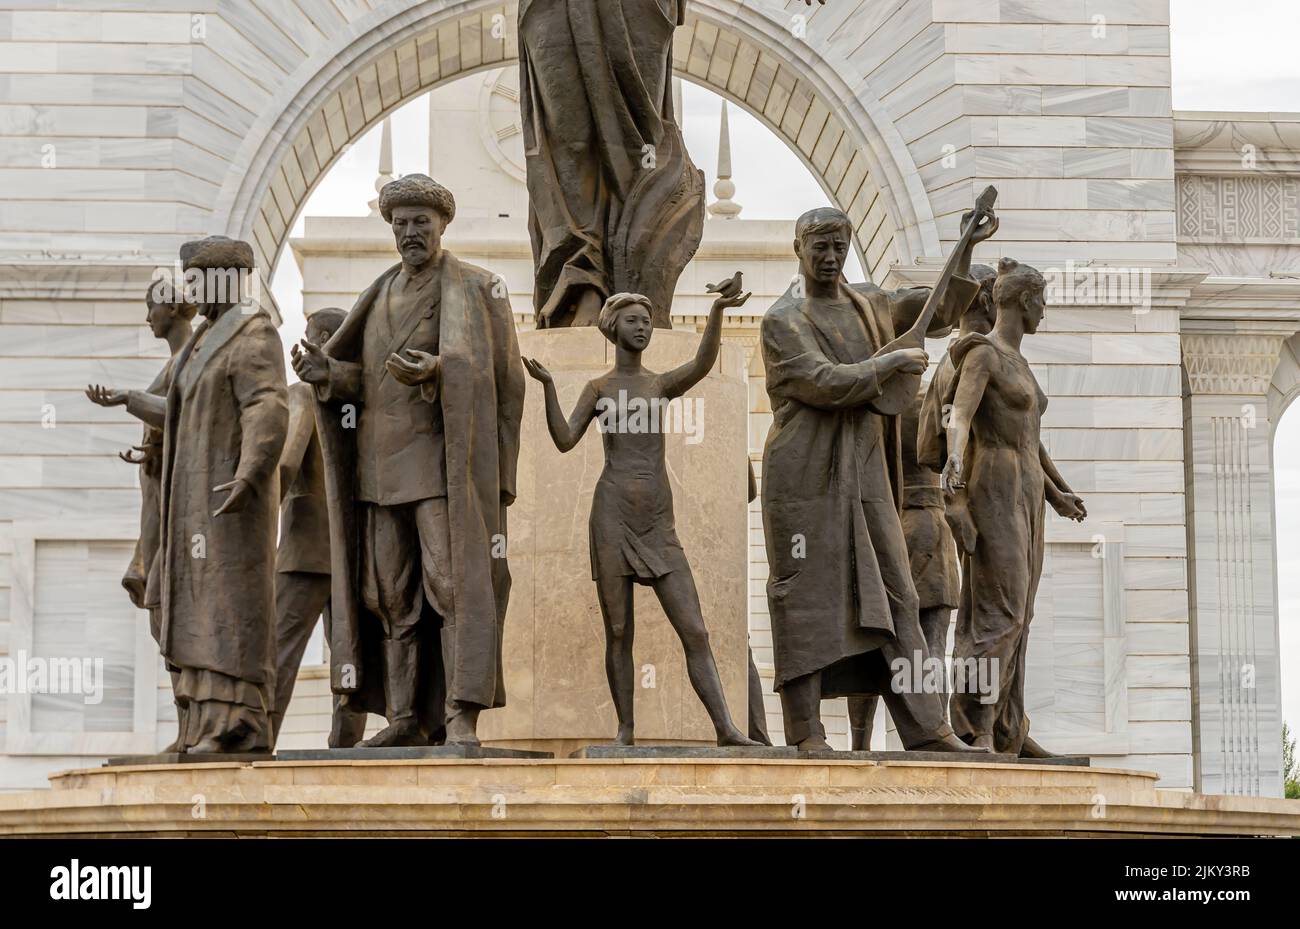 Grupo escultórico en el Monumento a los Elí Kazakos que representa a los líderes culturales nacionales, Nur-Sultán, Astana, Kazajstán Foto de stock